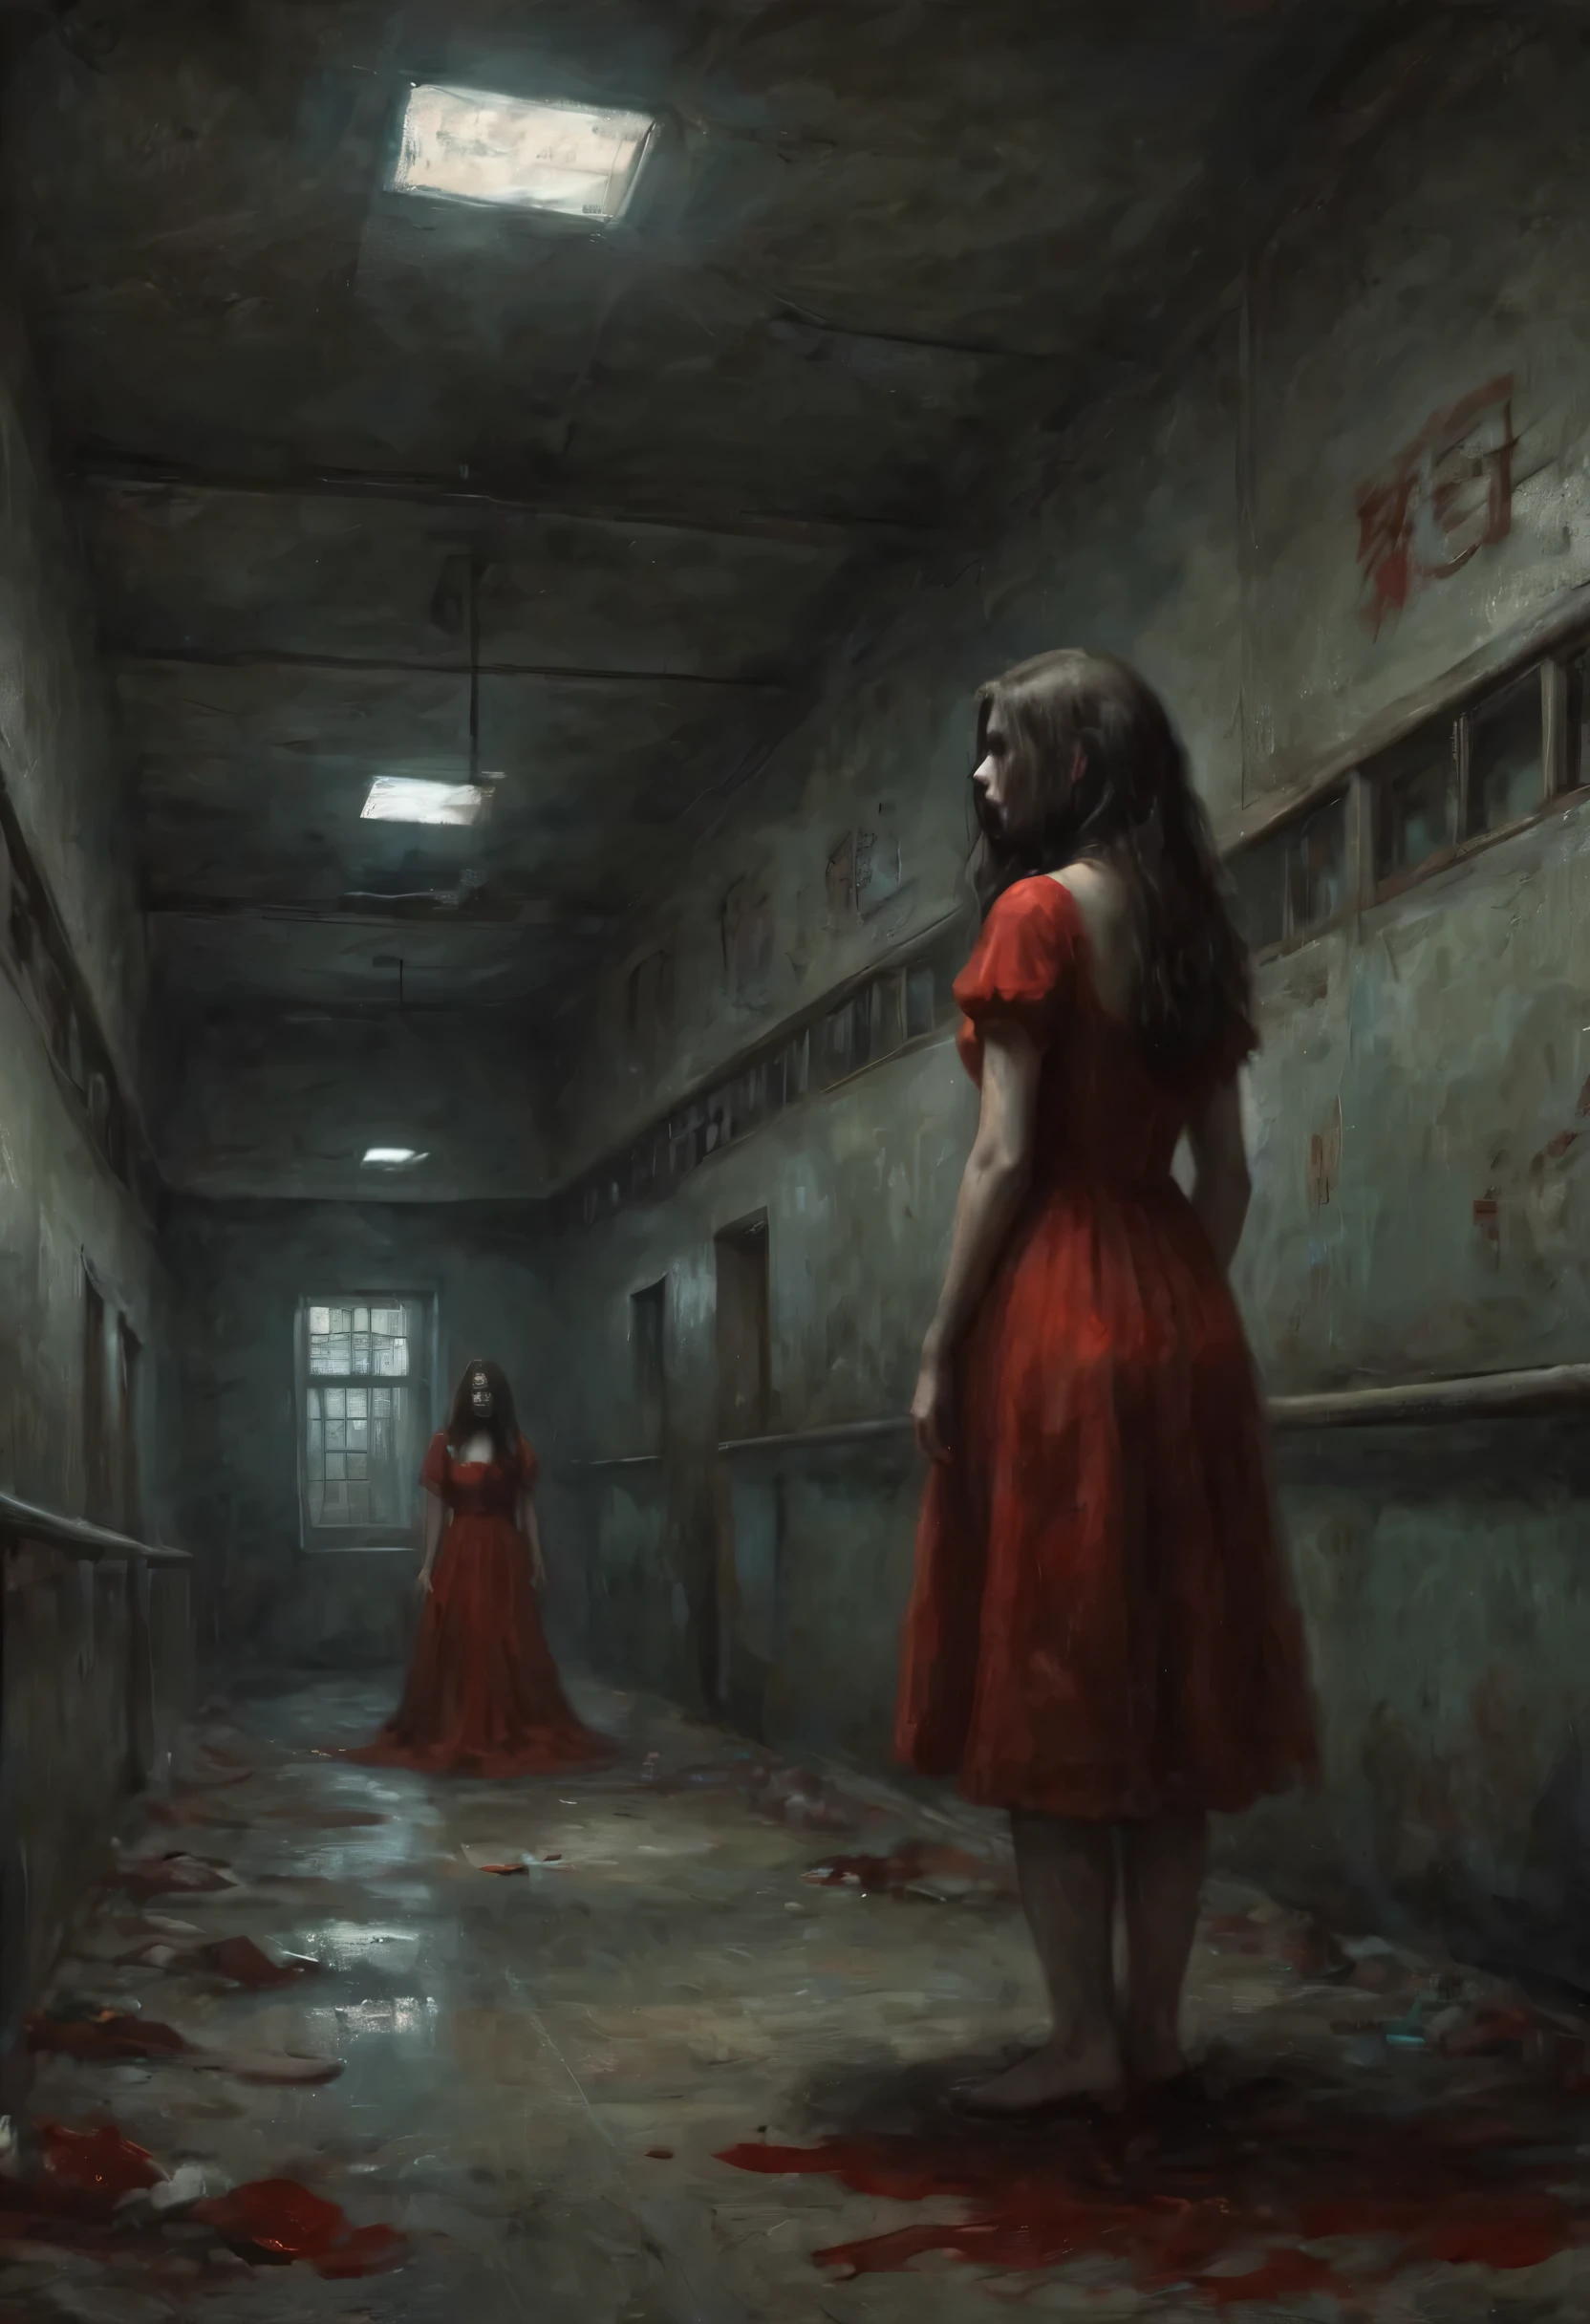 廢棄的病院，昏暗走廊兩側的籠子裡，無數雙手伸出，很多手，遠處的天空中懸浮著一個紅裙少女的奇異身影.，長髮遮住臉，什麼時候&#39;看不清臉。昏暗的燈光，詭異氣氛，陰森恐怖，令人不安的，蠕動。